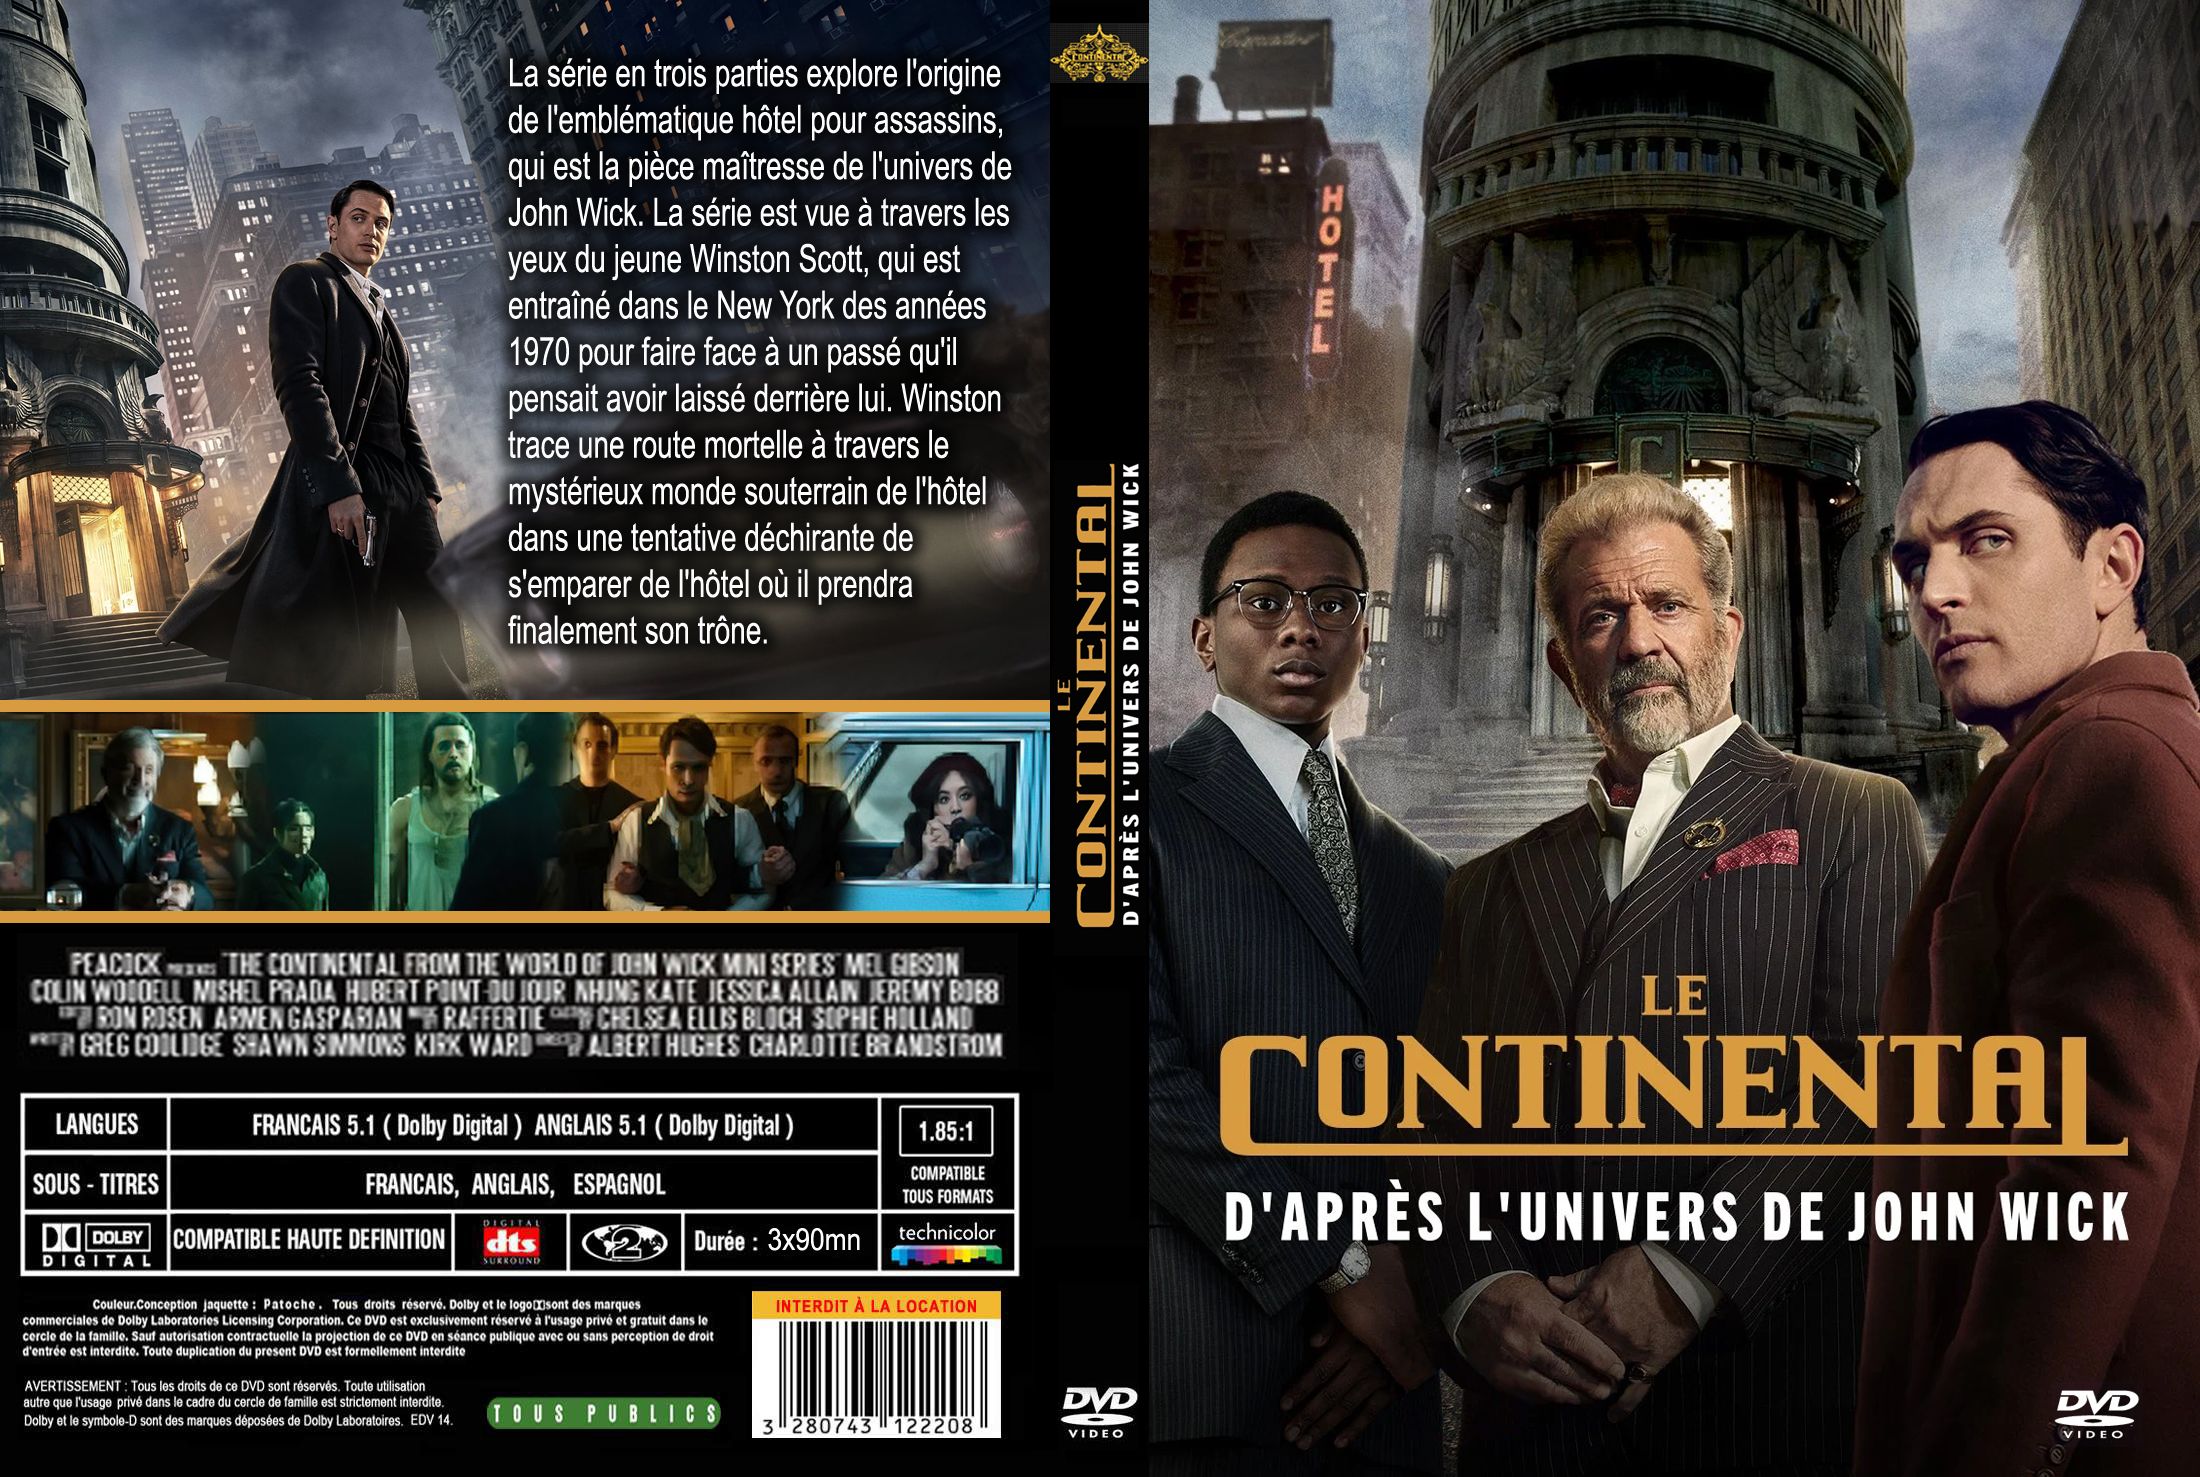 Jaquette DVD Le Continental saison 1 custom